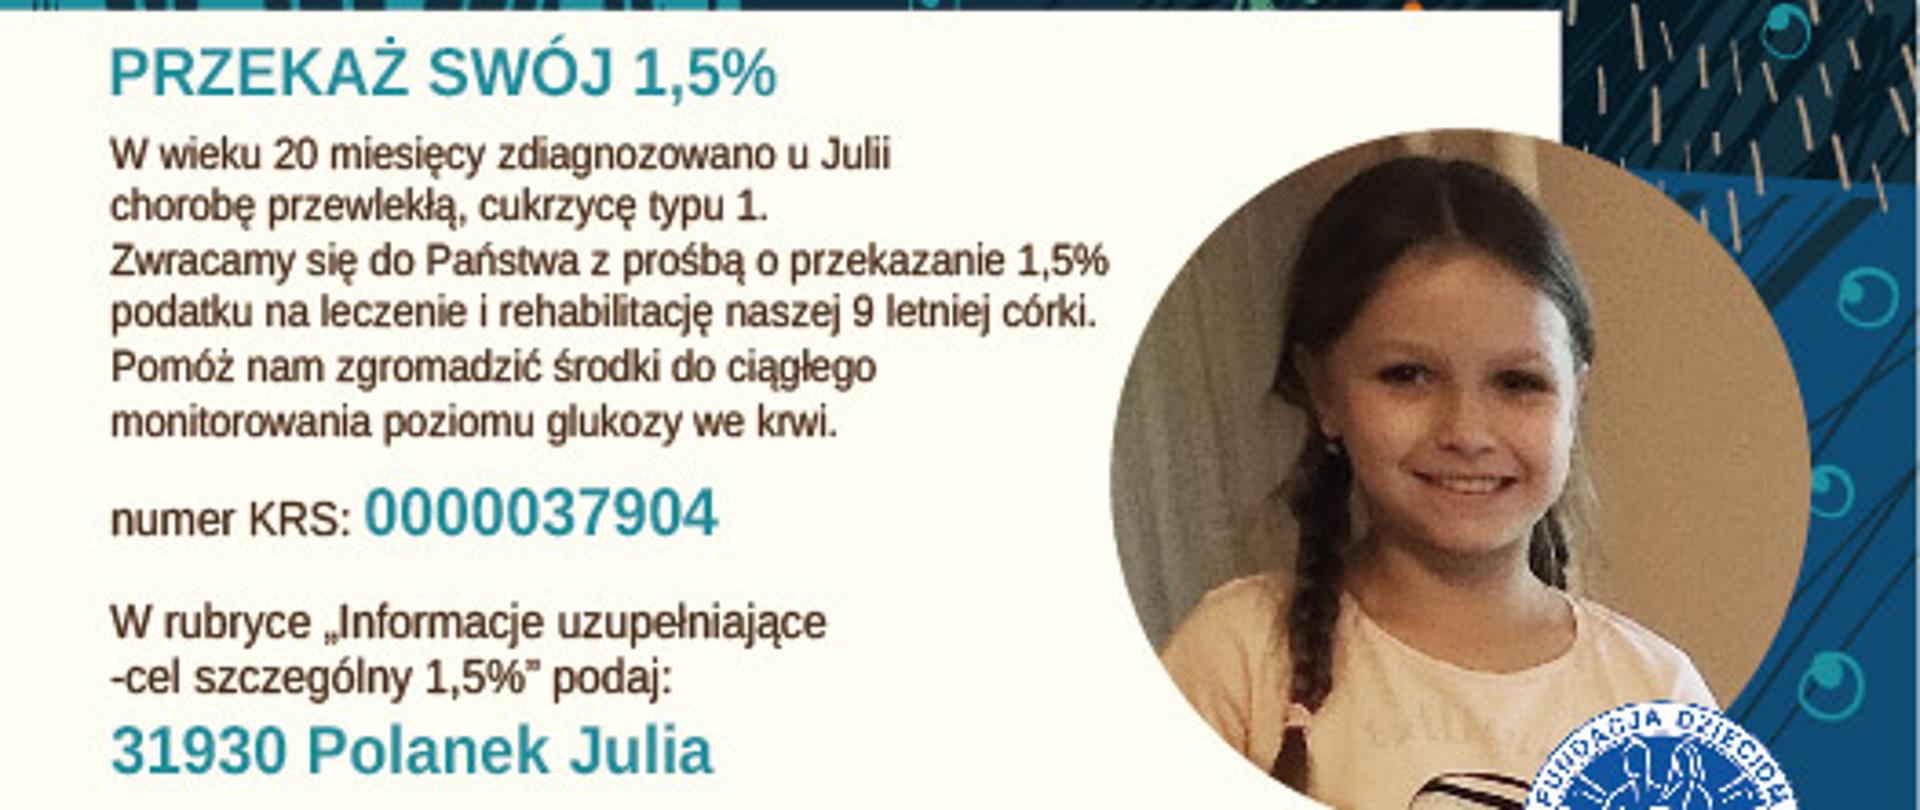 Polanek Julia